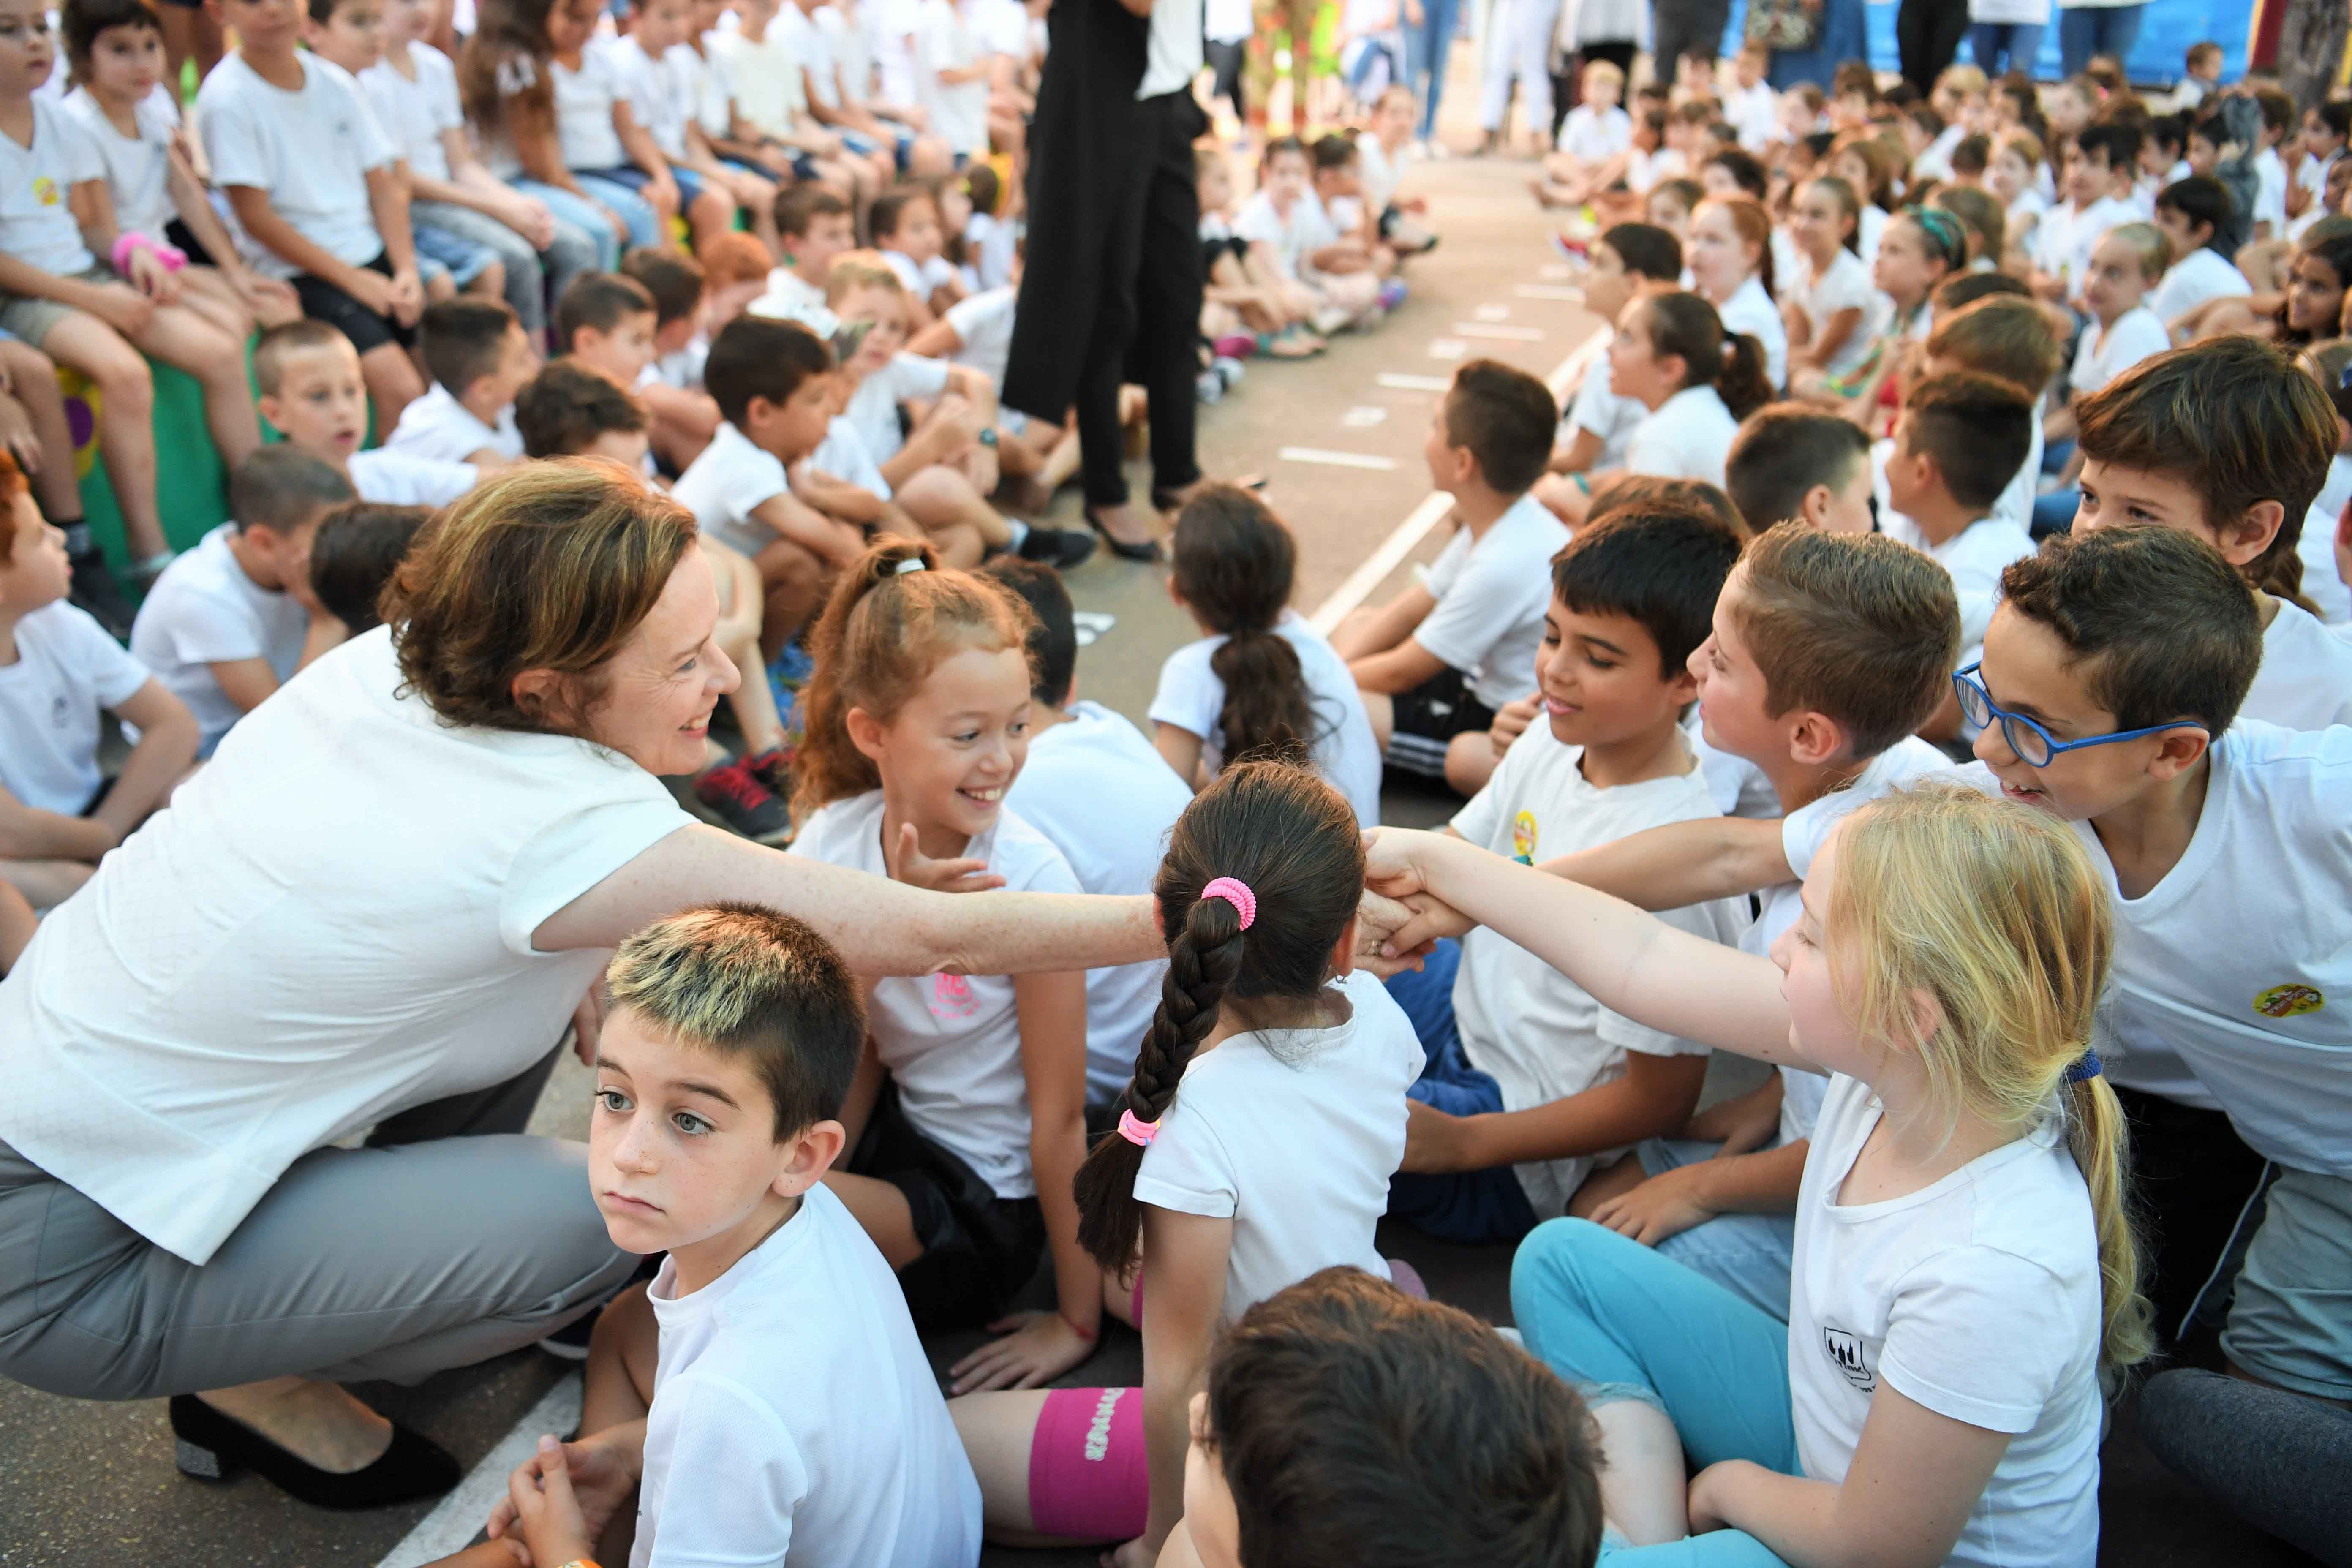 55,495 תלמידים, מגן ועד י"ב, החלו את לימודיהם בשנה"ל החדשה במערכת החינוך העירונית בחיפה, שנפתחה בהצלחה וללא תקלות